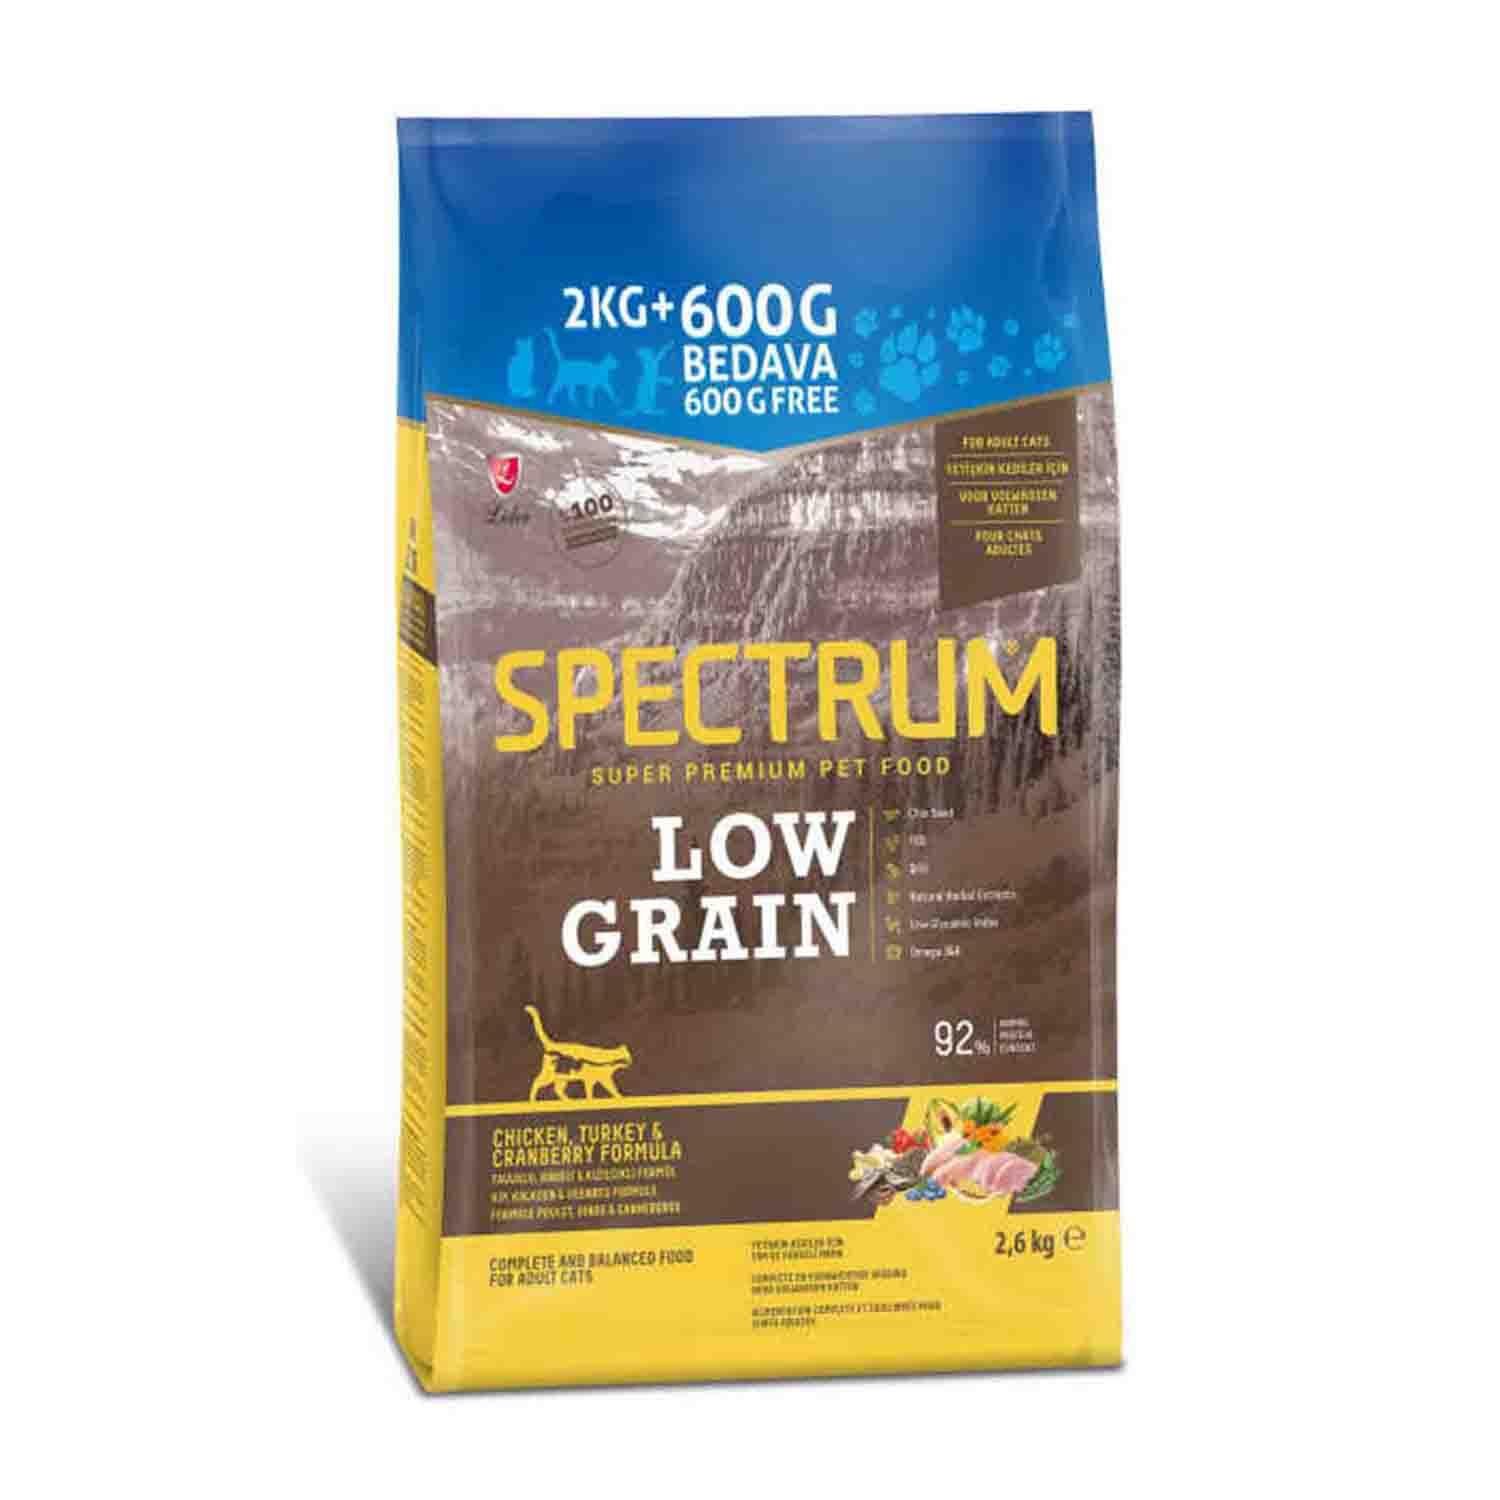 Spectrum Low Grain Tavuklu Hindili Kızılcıklı Yetişkin Kedi Maması 2 Kg + 600 Gr Hediyeli